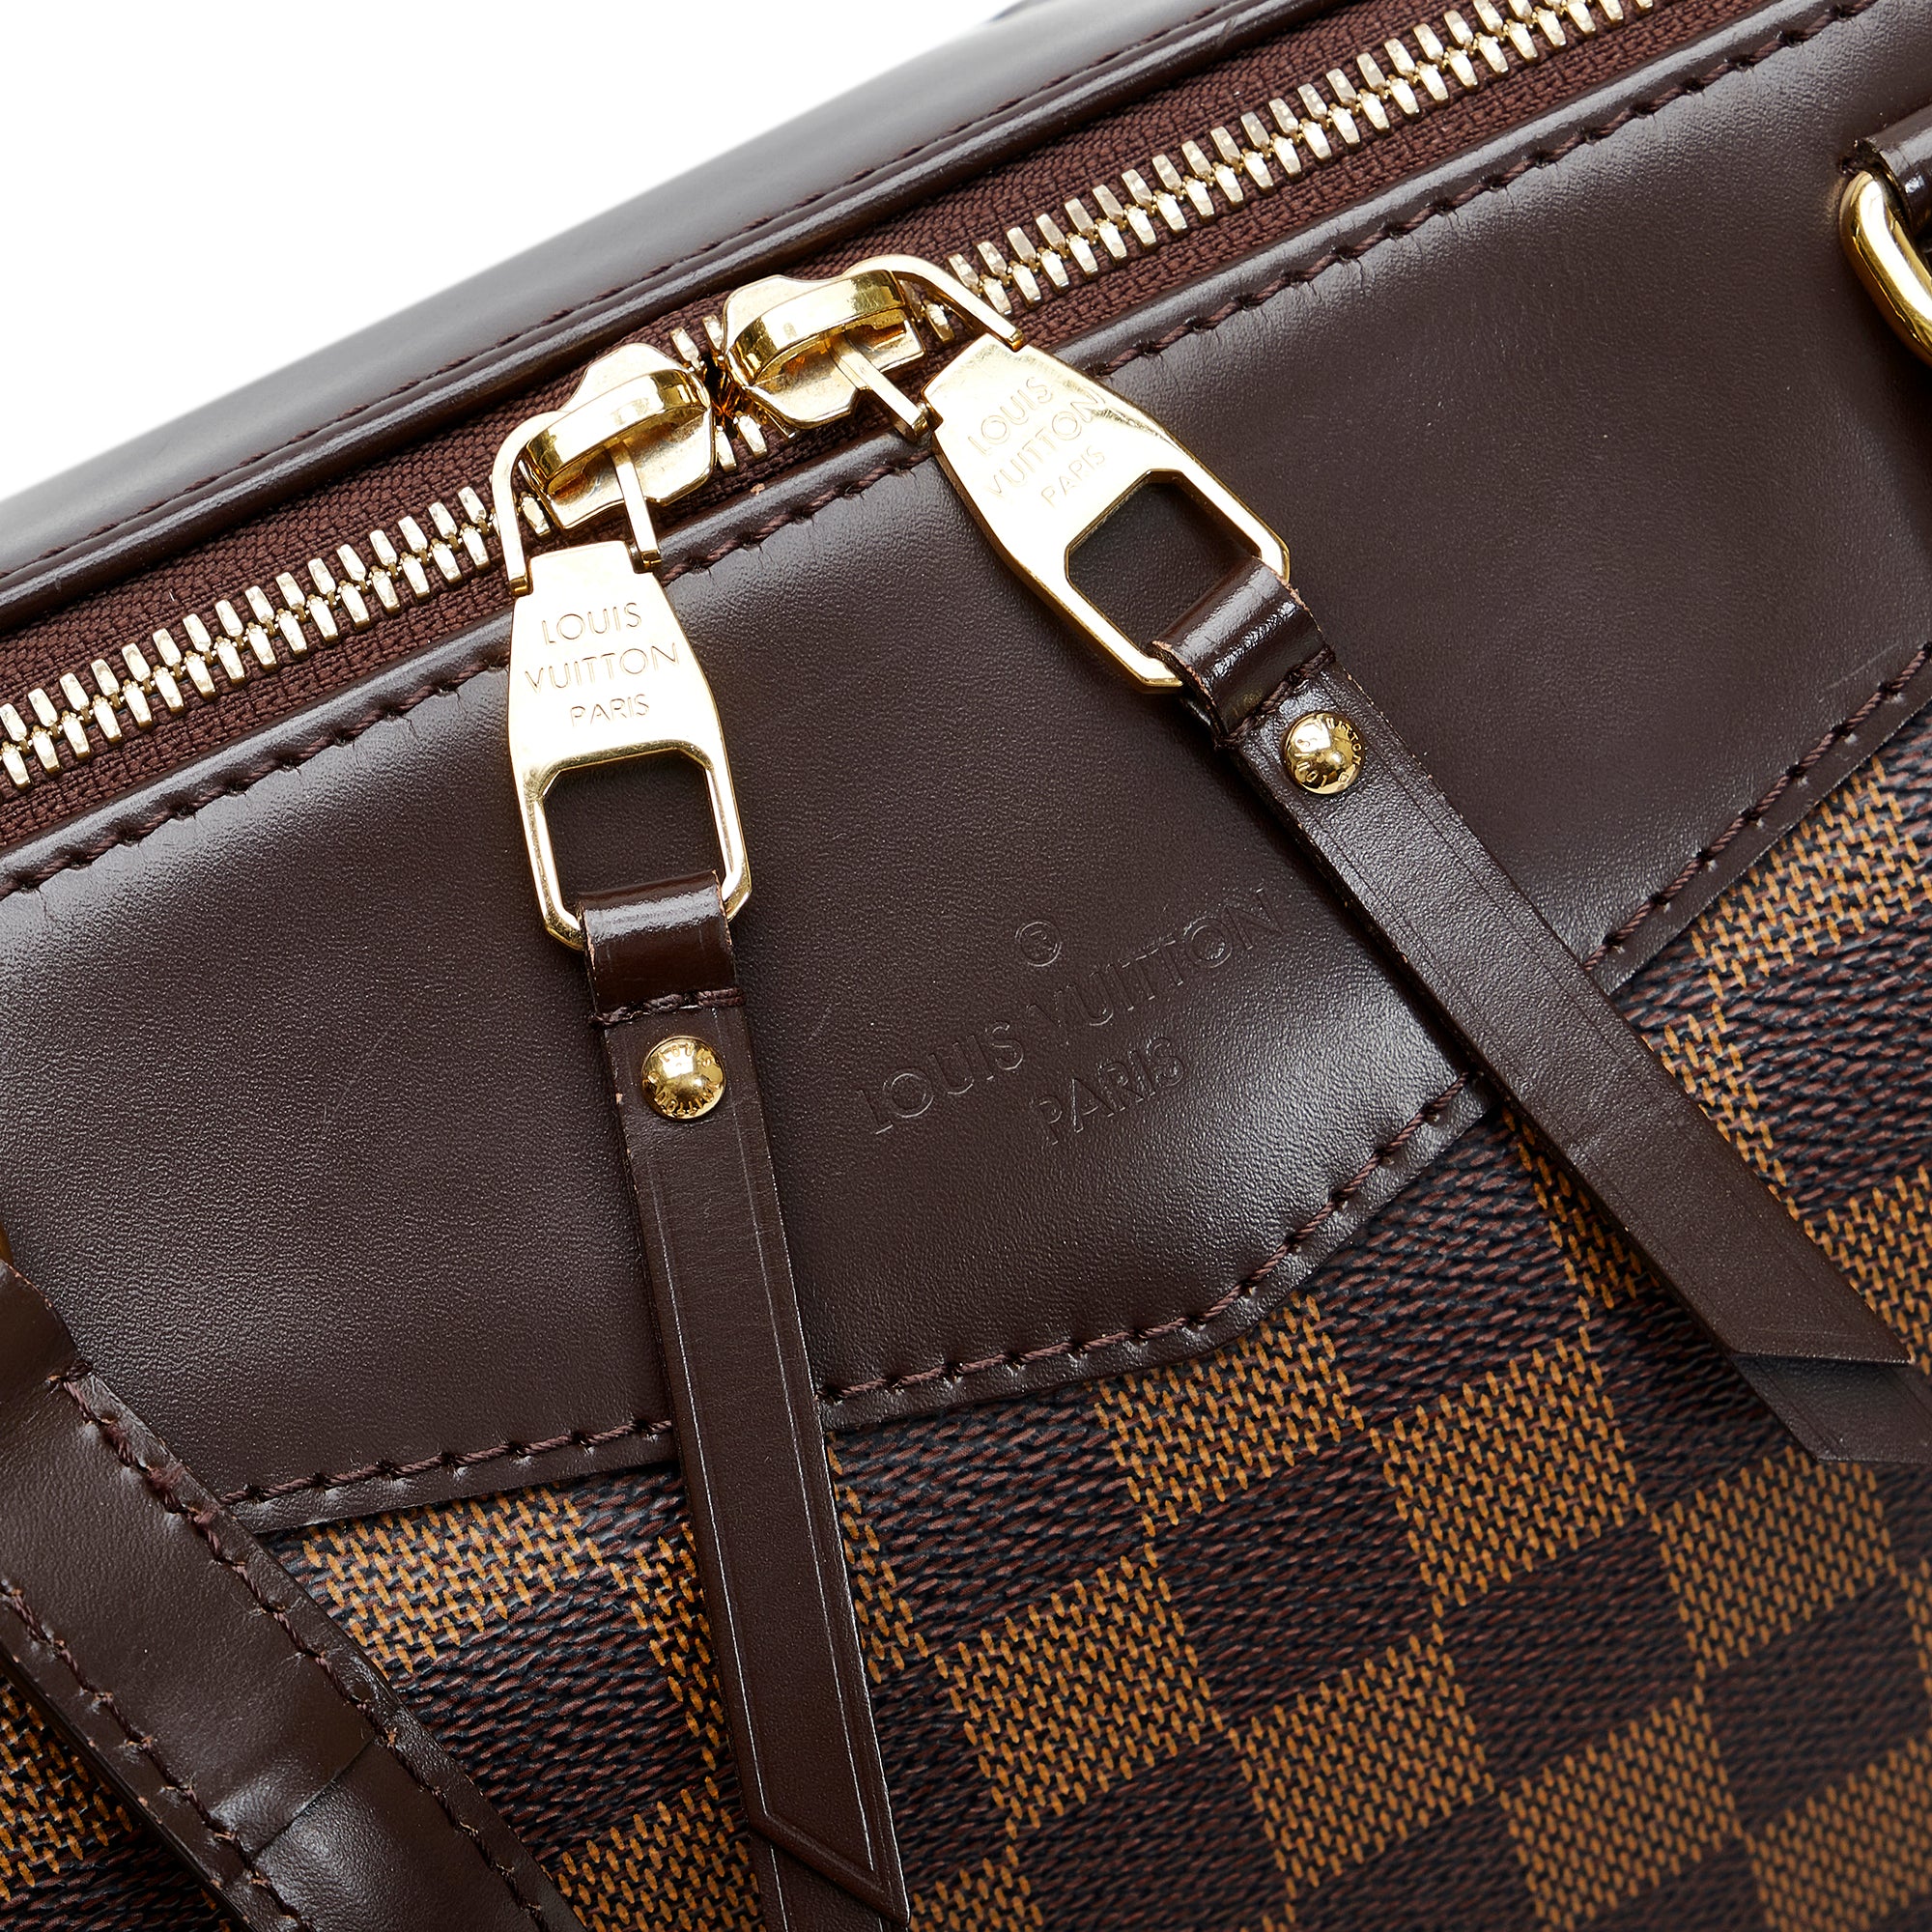 Louis Vuitton Damier Ebene Westminster Shoulder Bag